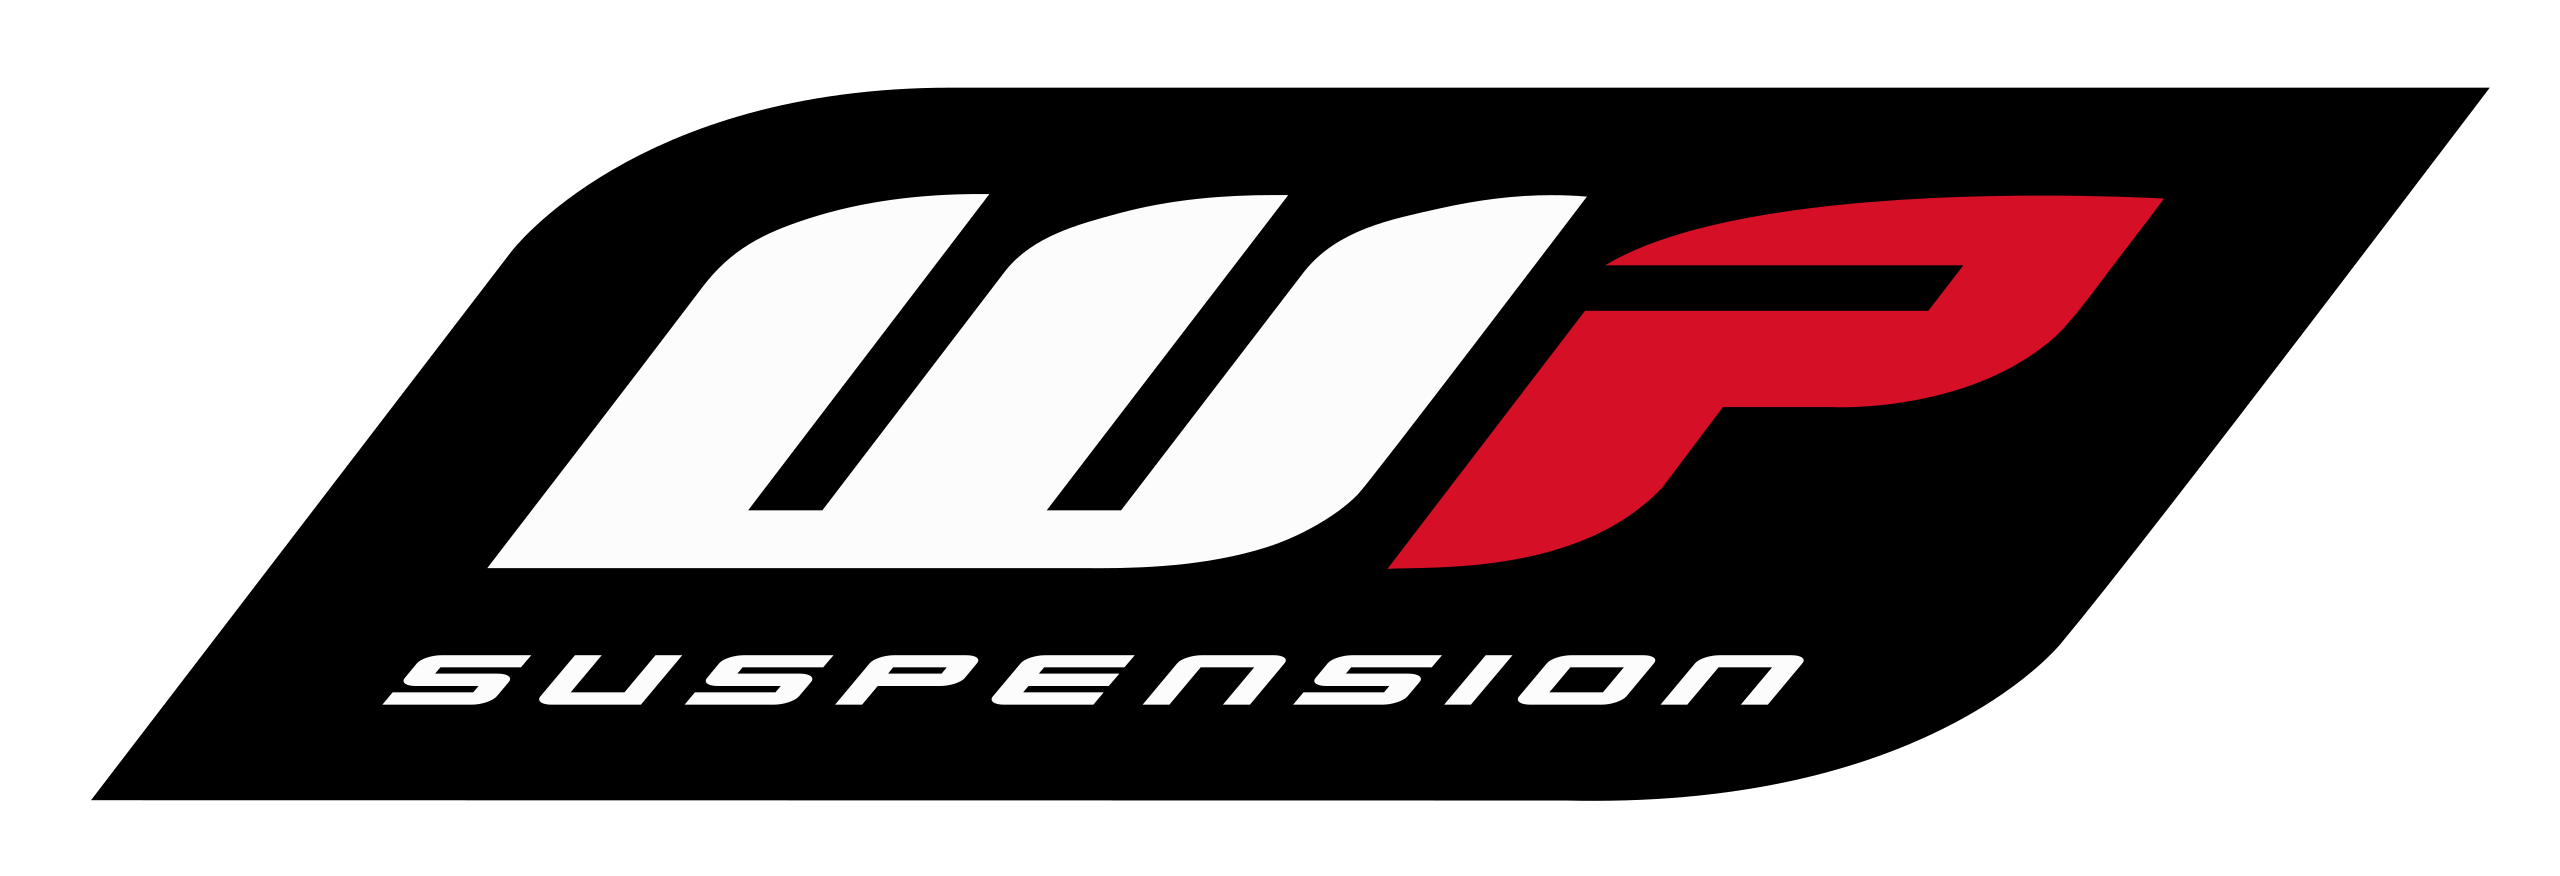 2560px-WP_Suspension_logo.svg